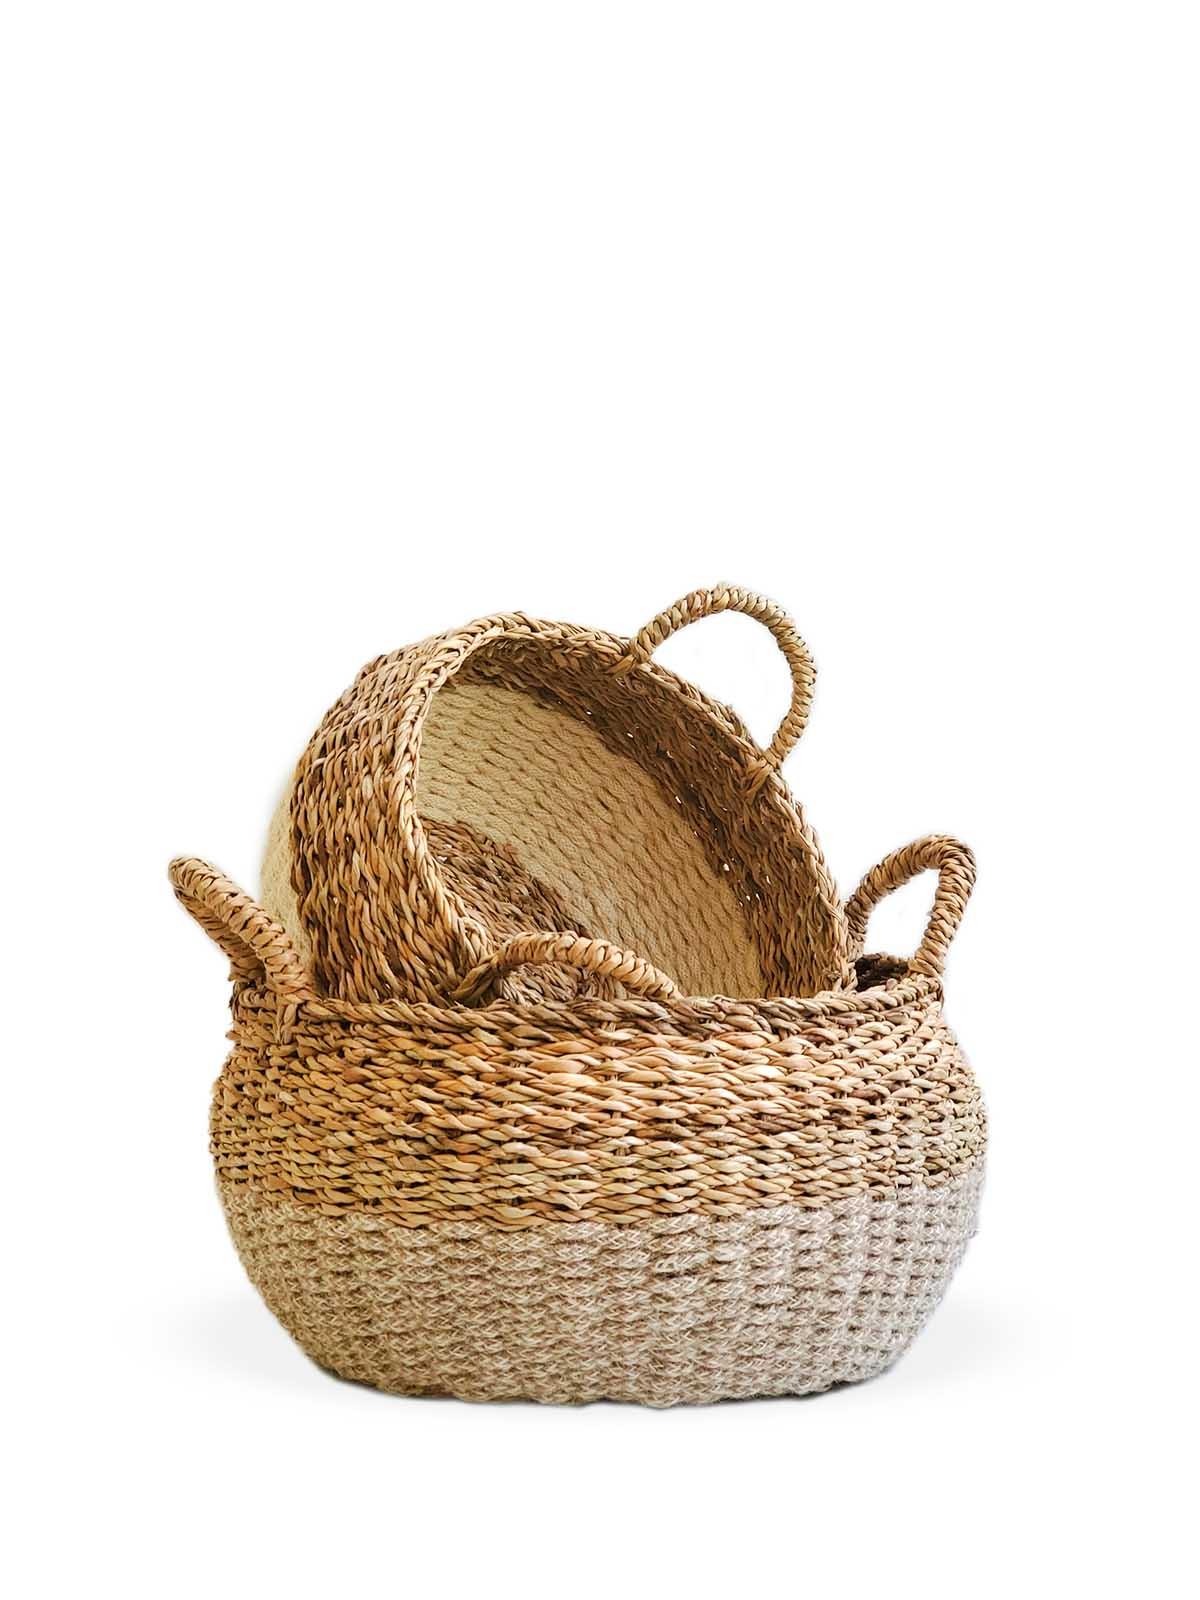 Ula Natural Floor Basket - Plant Paradise Boutique